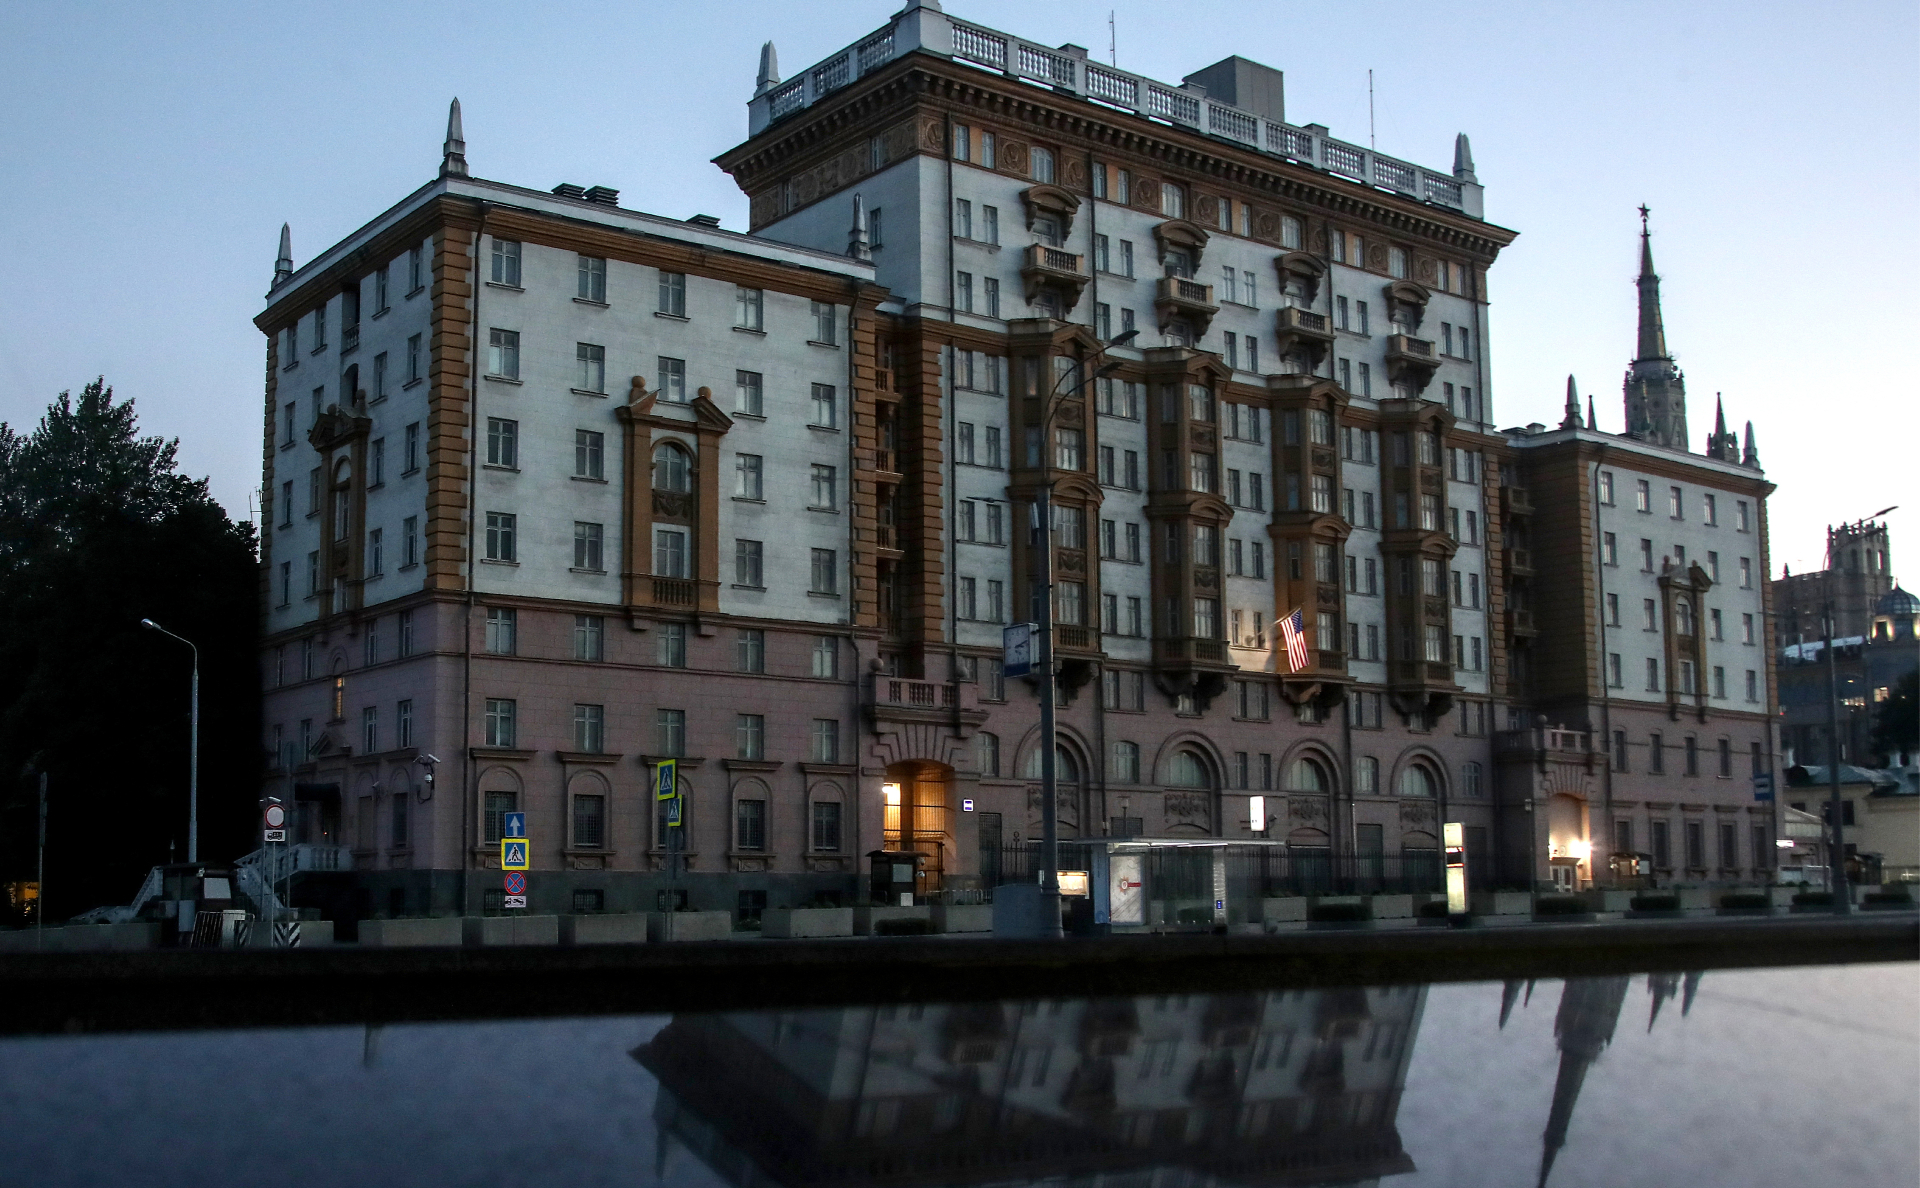 Здание посольства США в России